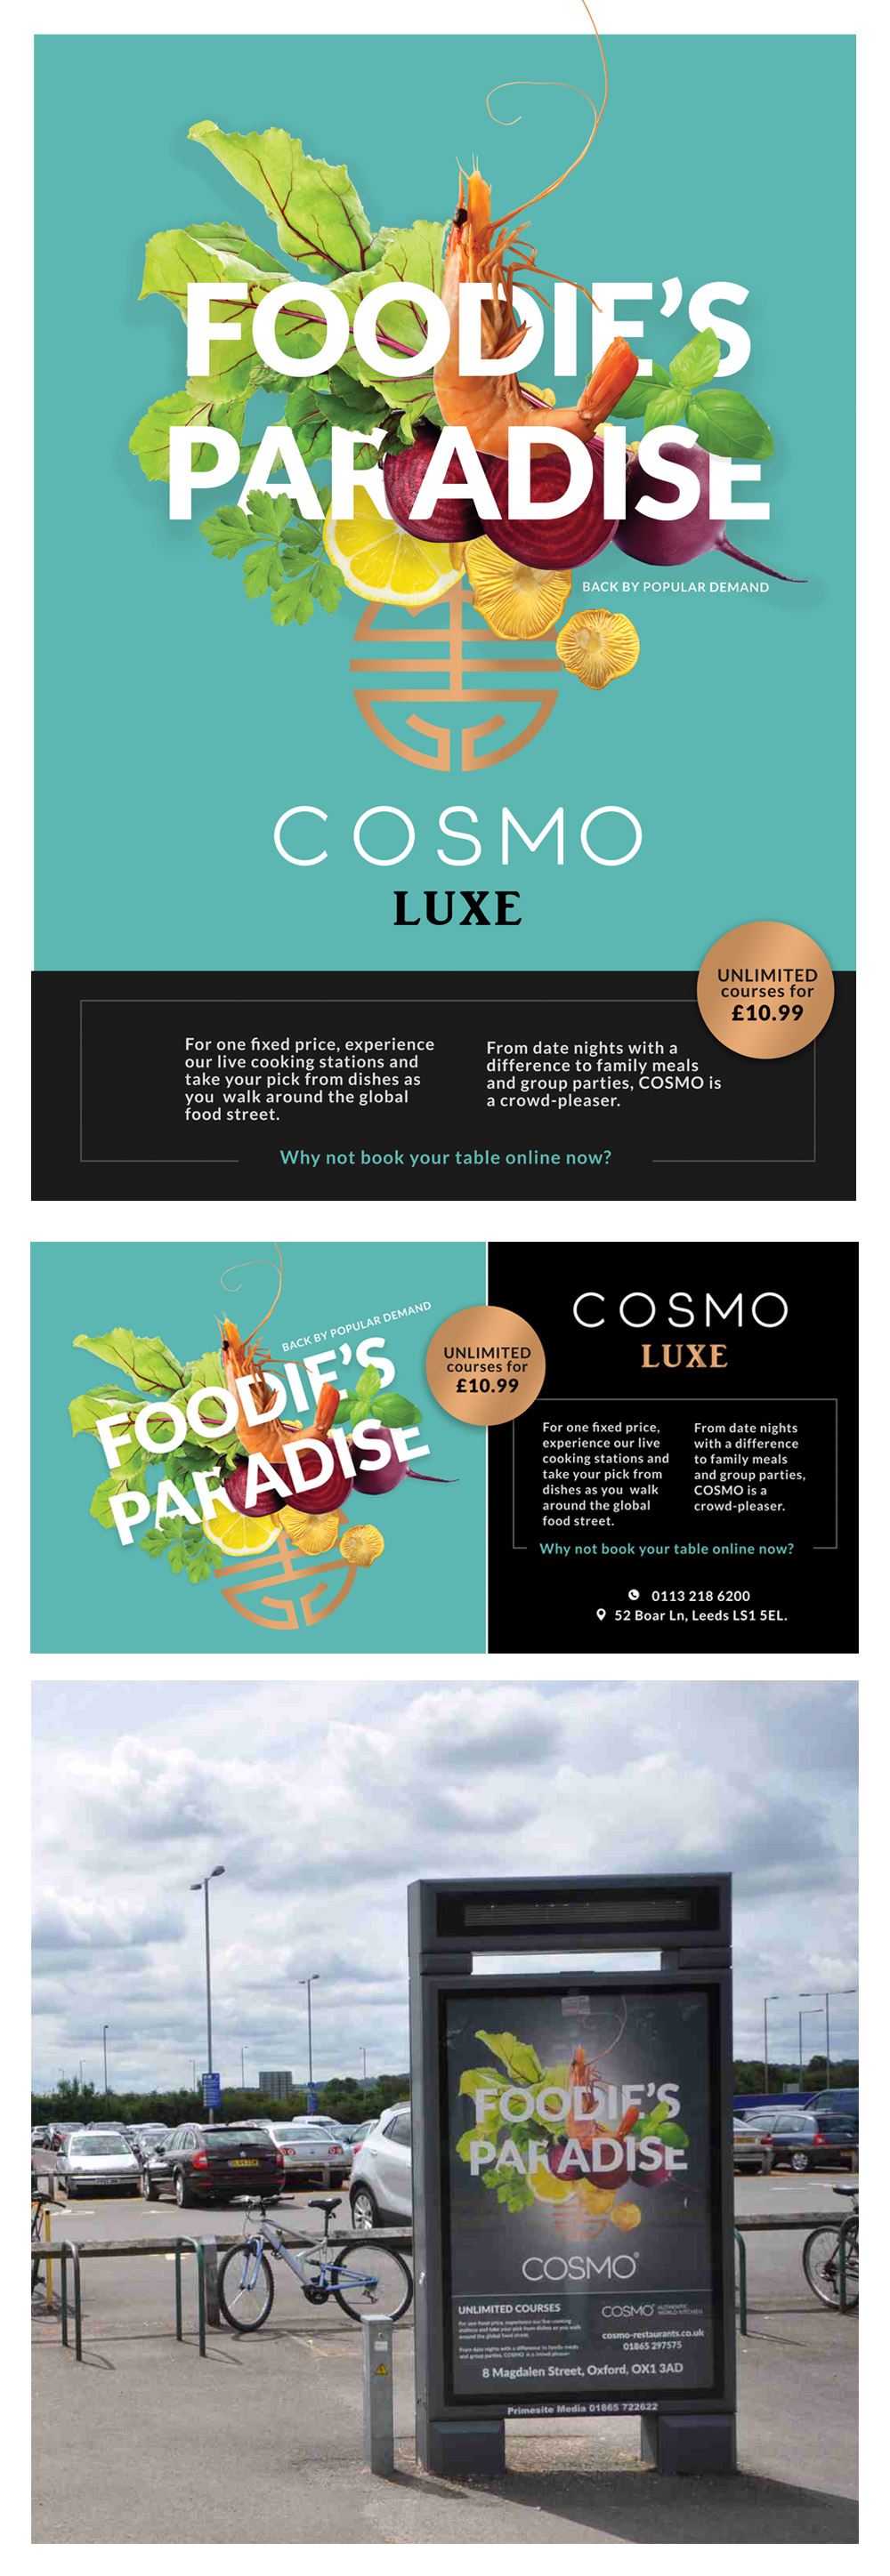 cosmo-restaurant-poster-design-Leeds-marketing-